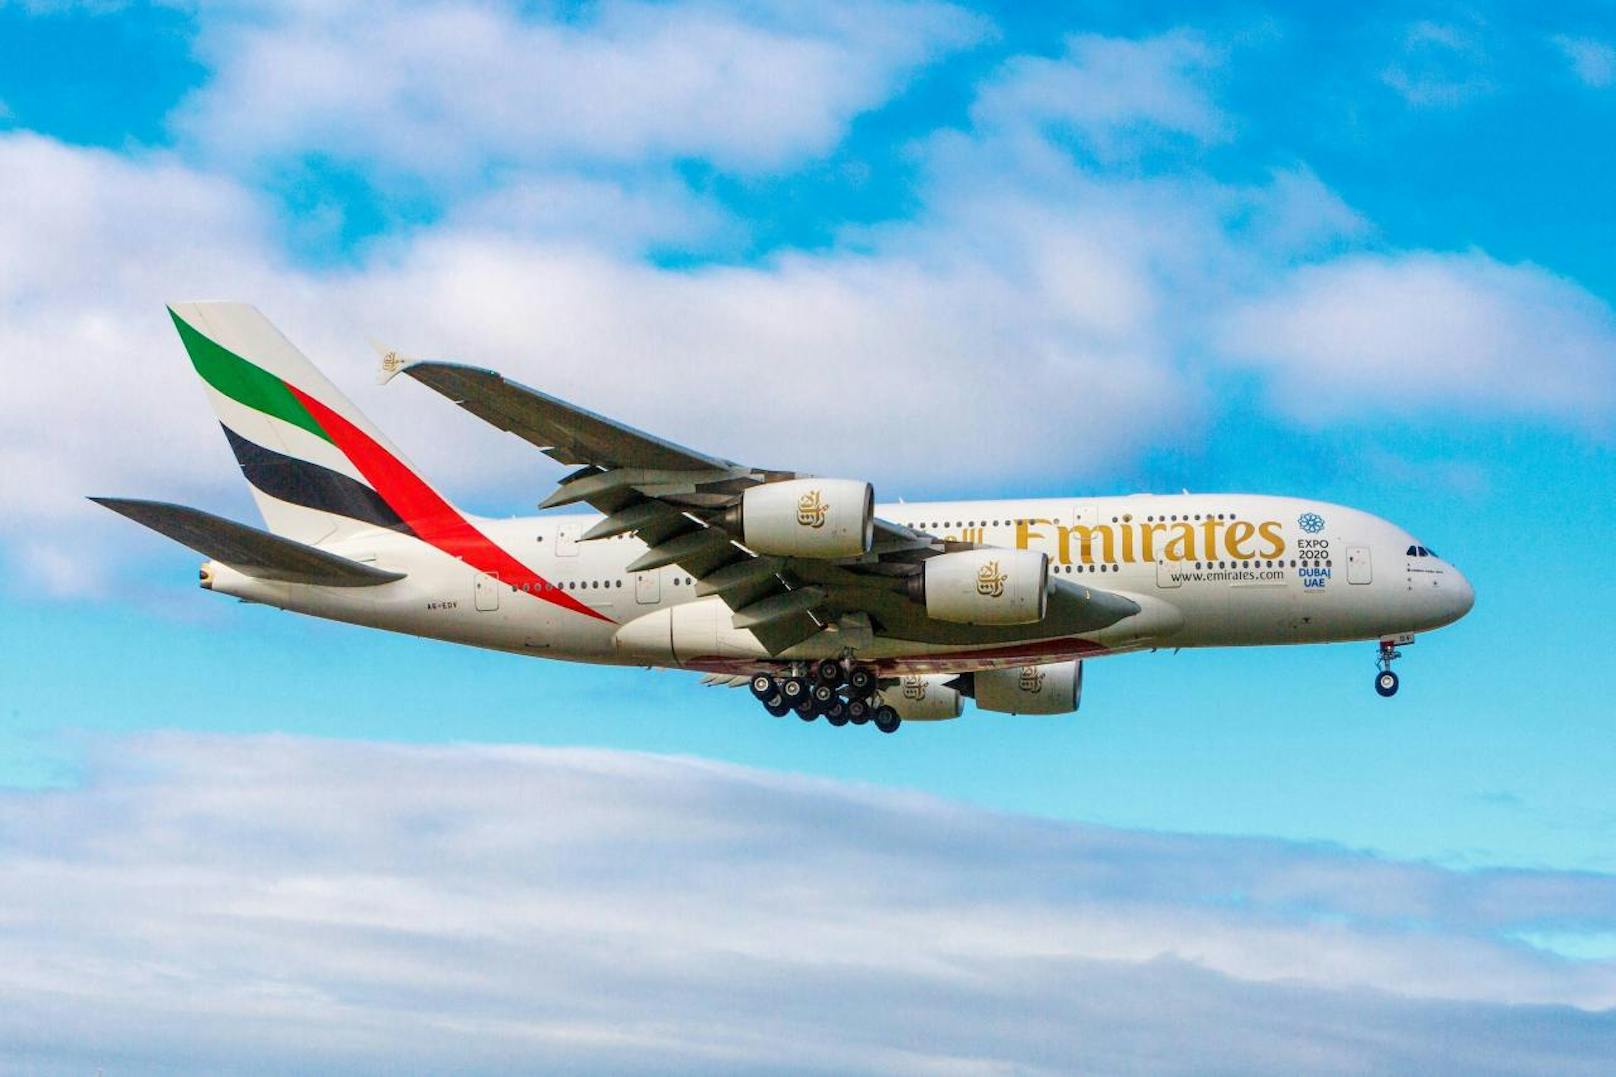 <b>Platz 3: Emirates, Vereinigte Arabische Emirate</b>
Tripadvisor-Bewertung: "Diese Airline ist der Inbegriff von Stil, Klasse und Komfort. Das Flugzeug ist groß, die Atmosphäre trotzdem sehr gemütlich. Die Sitze sind breiter und die Fenster sind größer."